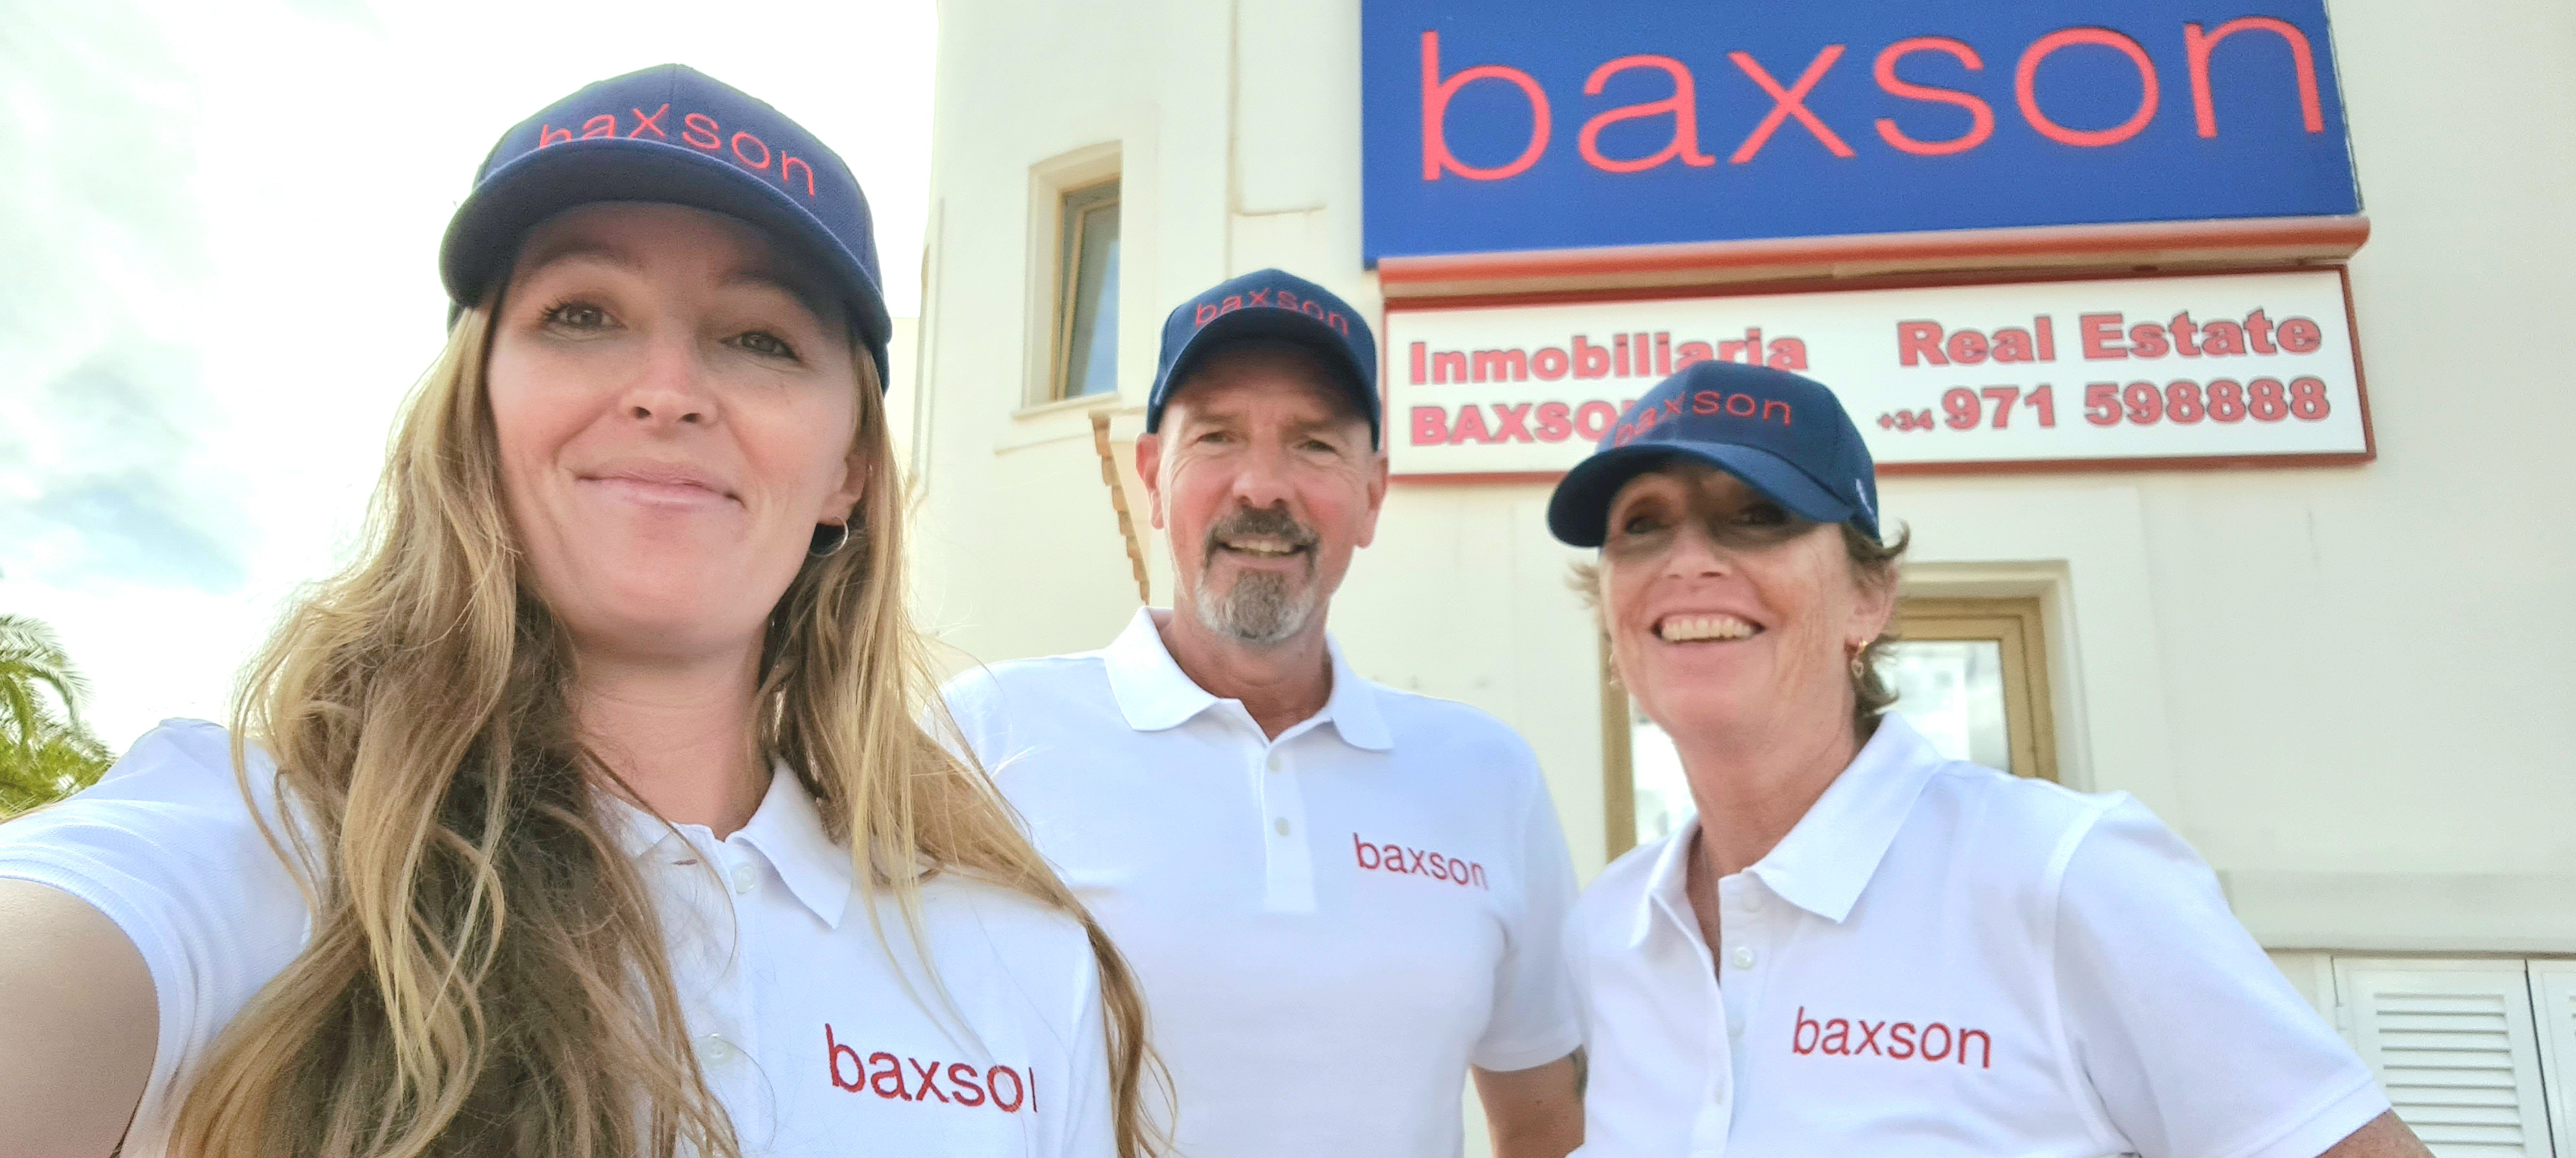 The Baxson Team